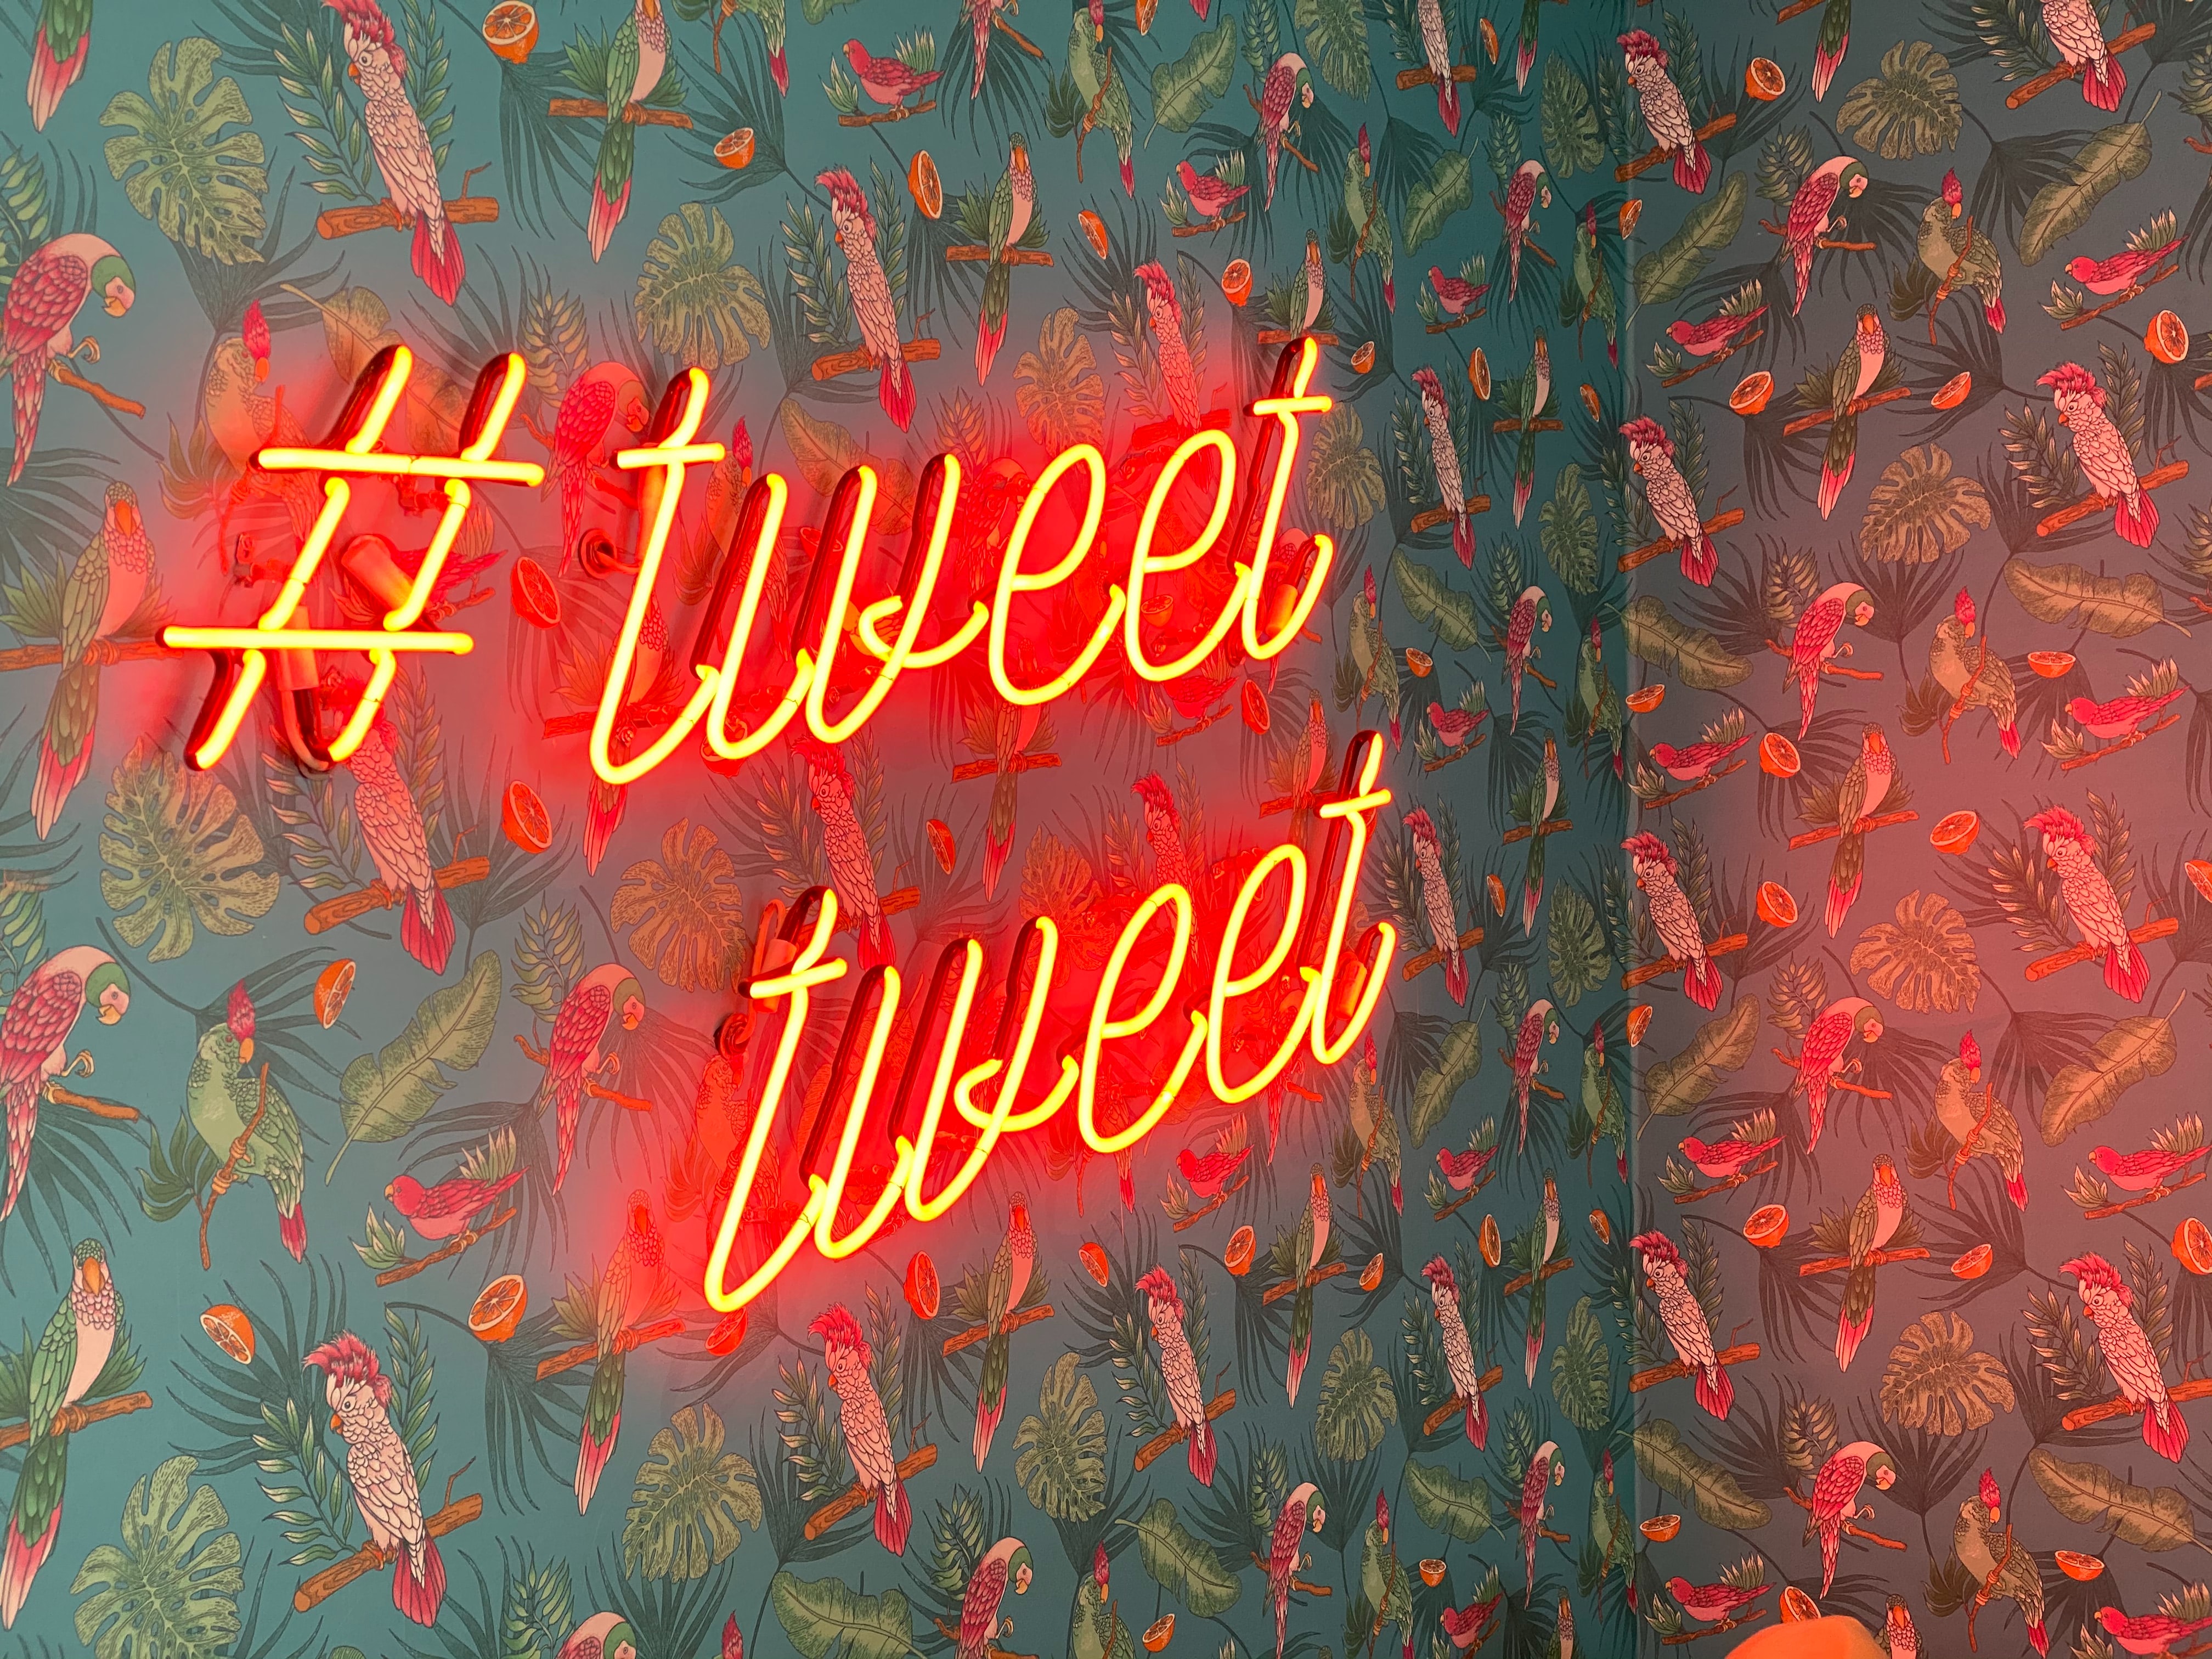 birds, words, pattern, neon, inscription, twitter